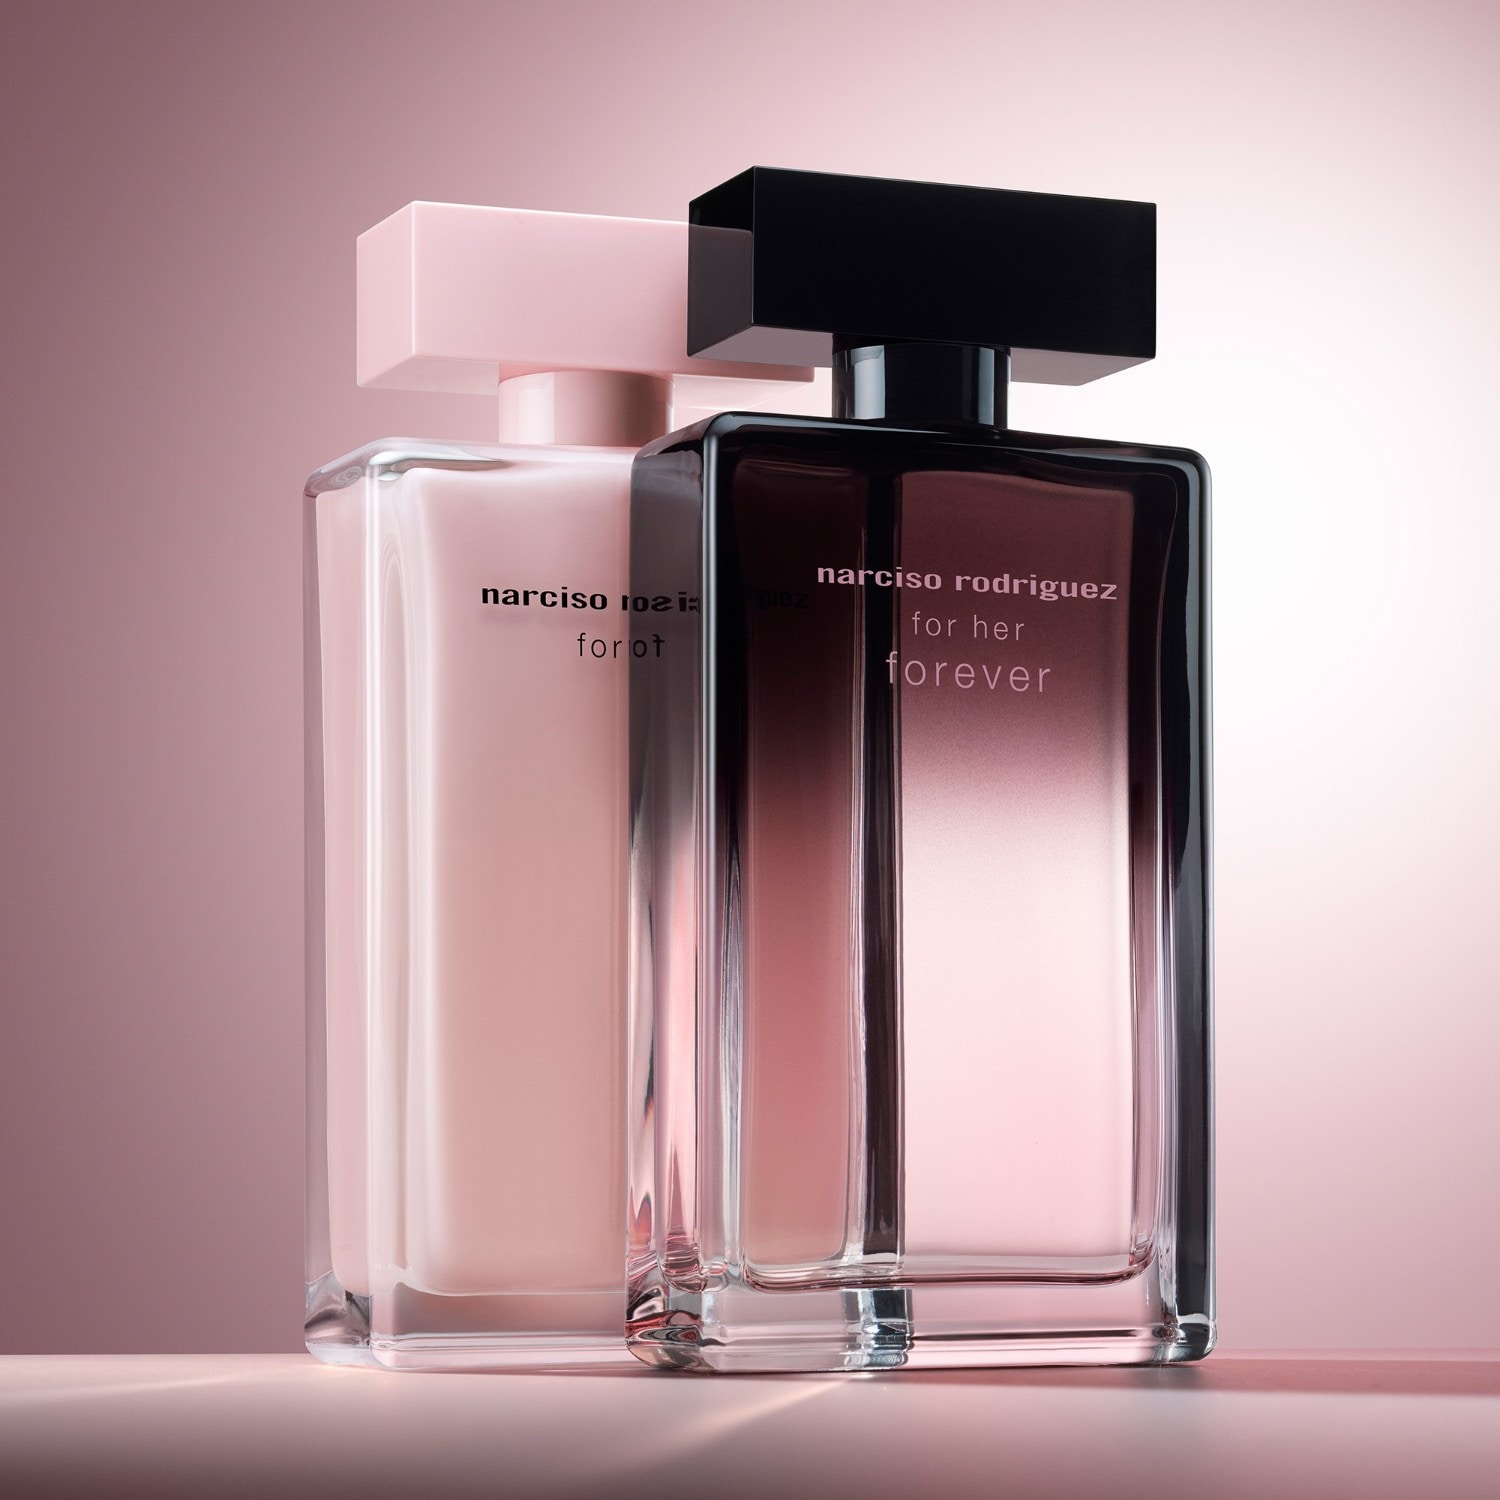 For Her Forever, una hermosa variación del icónico perfume de